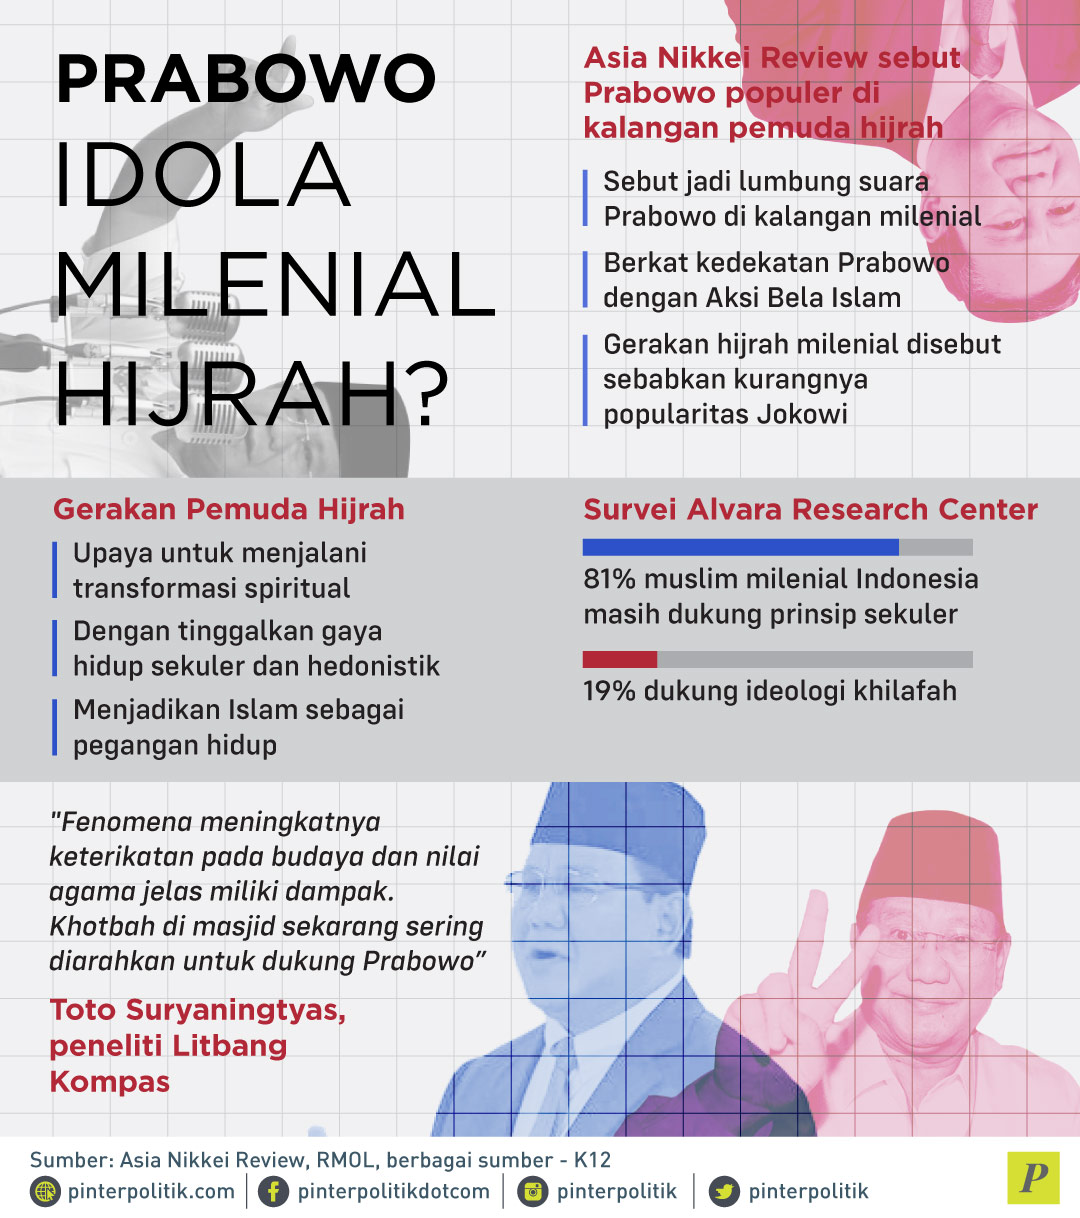 Prabowo Populer di kalangan pemuda hijrah